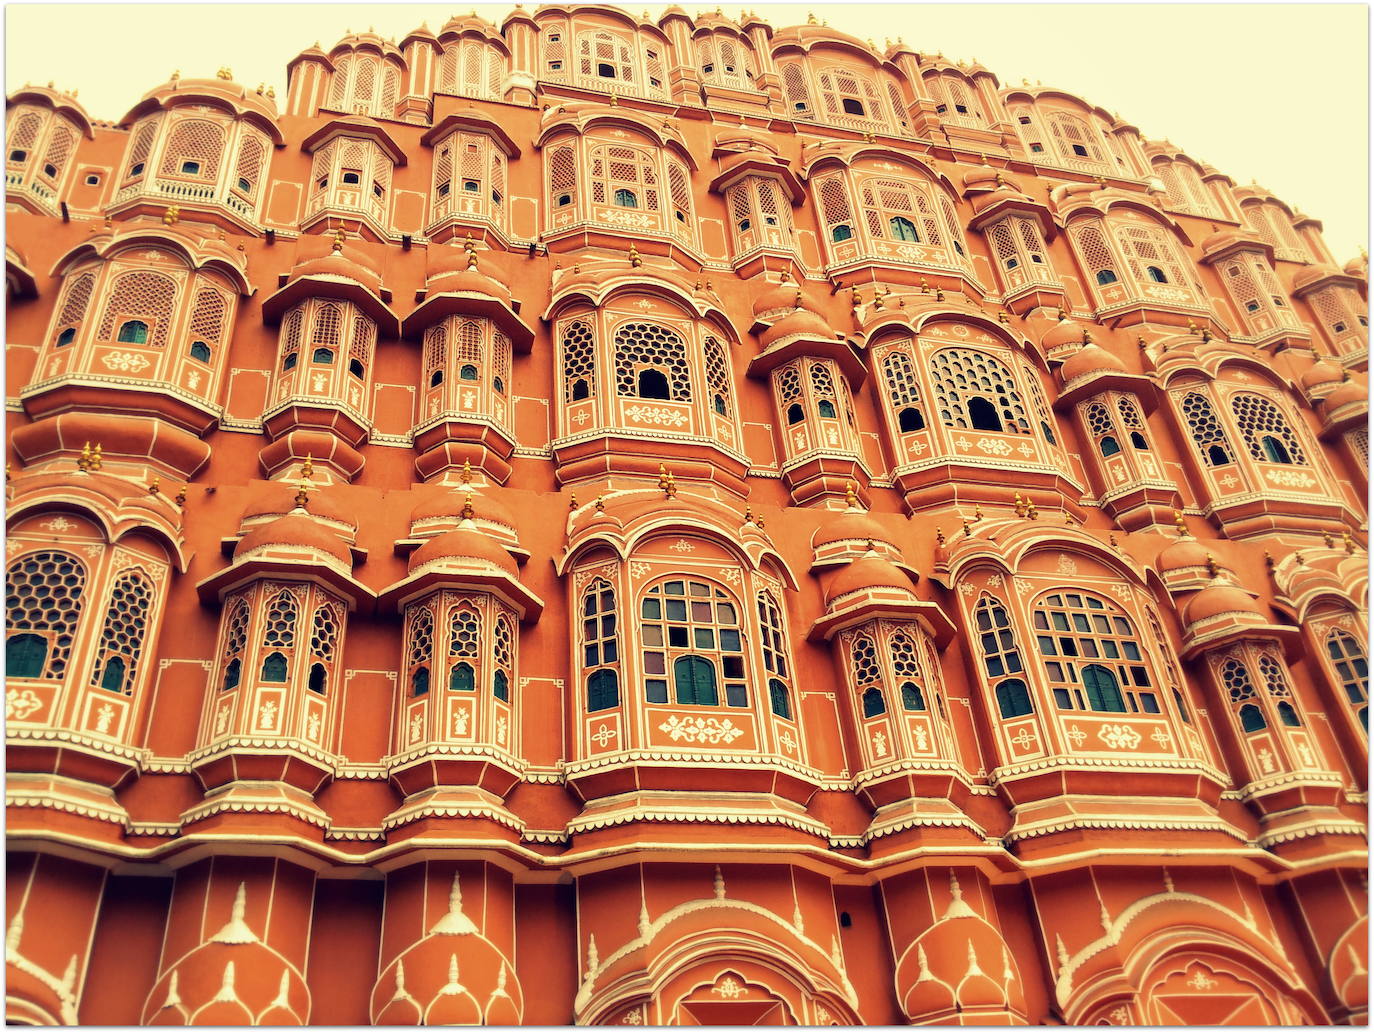 48. Jaipur